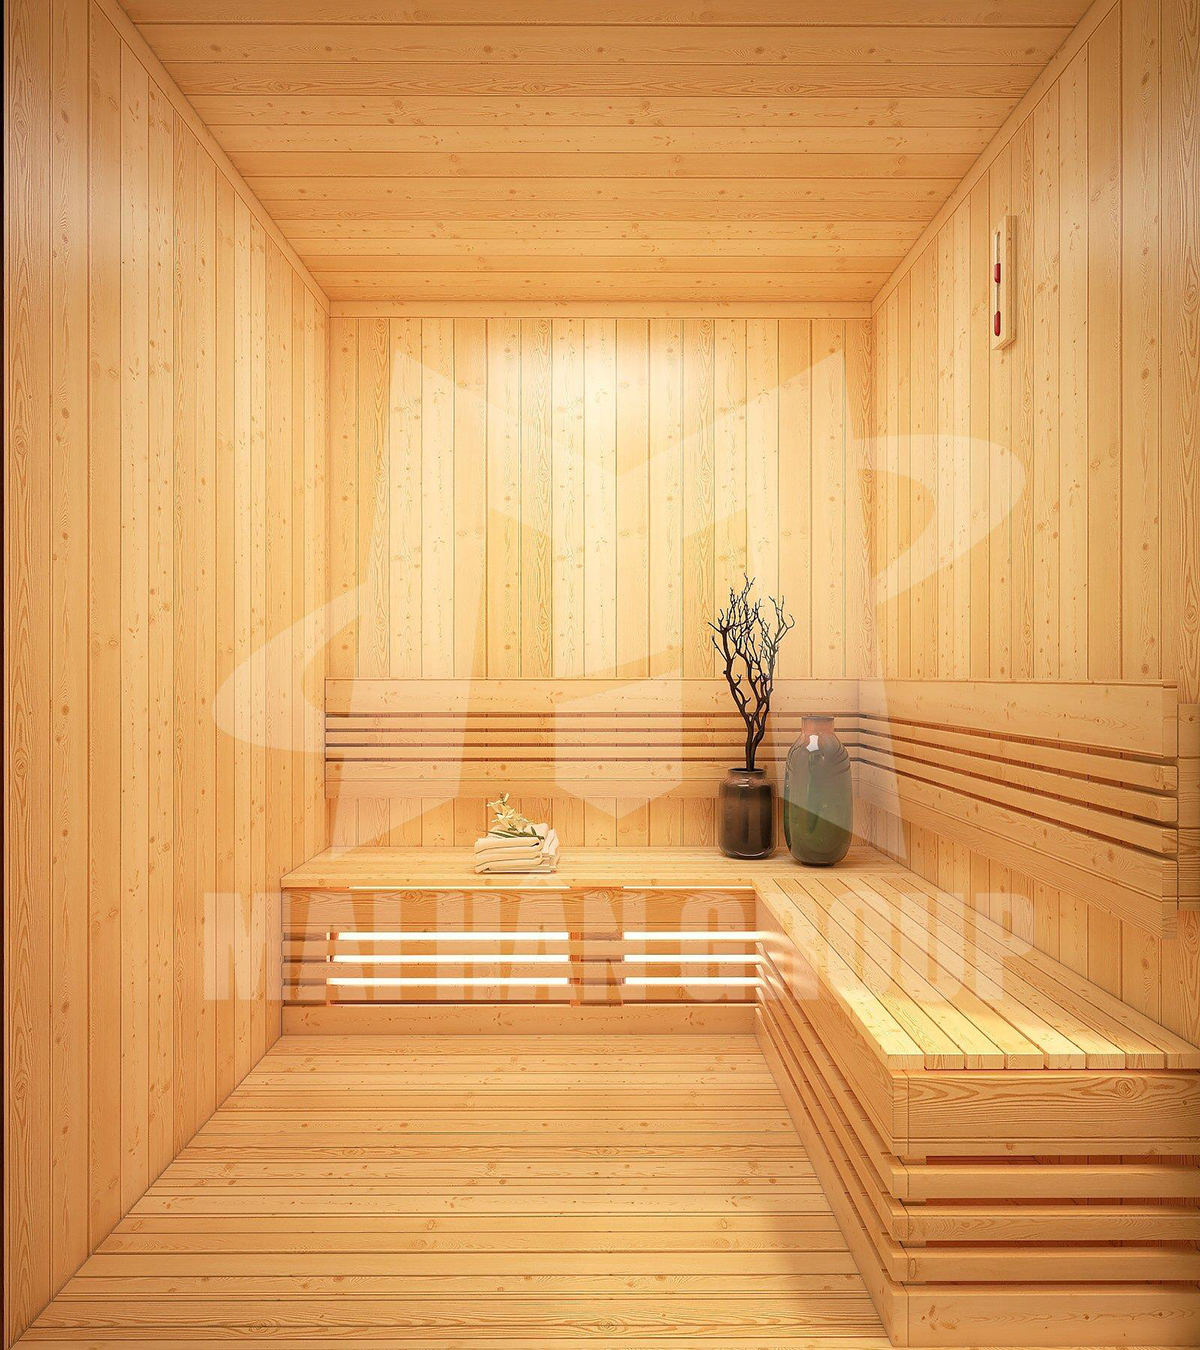 Những điều cần biết về phòng xông hơi khô sauna truyền thống